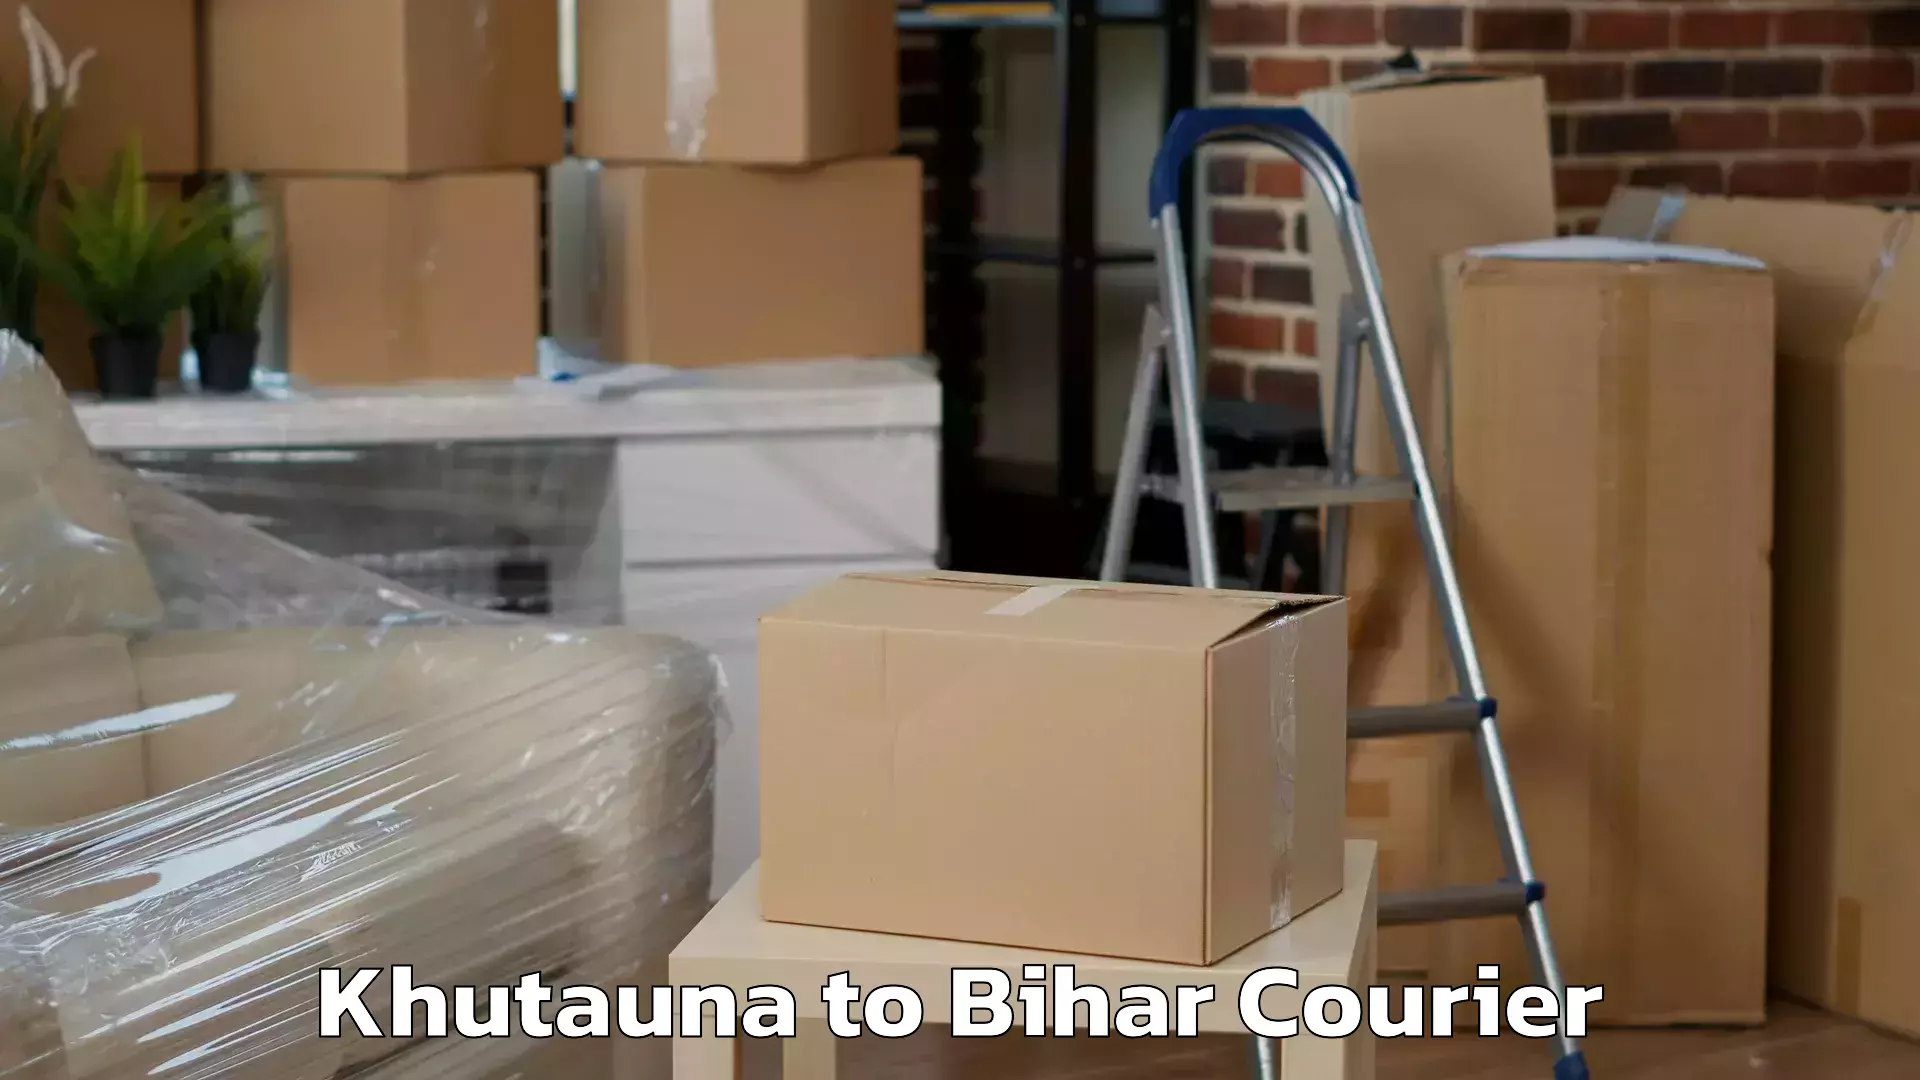 Efficient cargo services Khutauna to Bihar